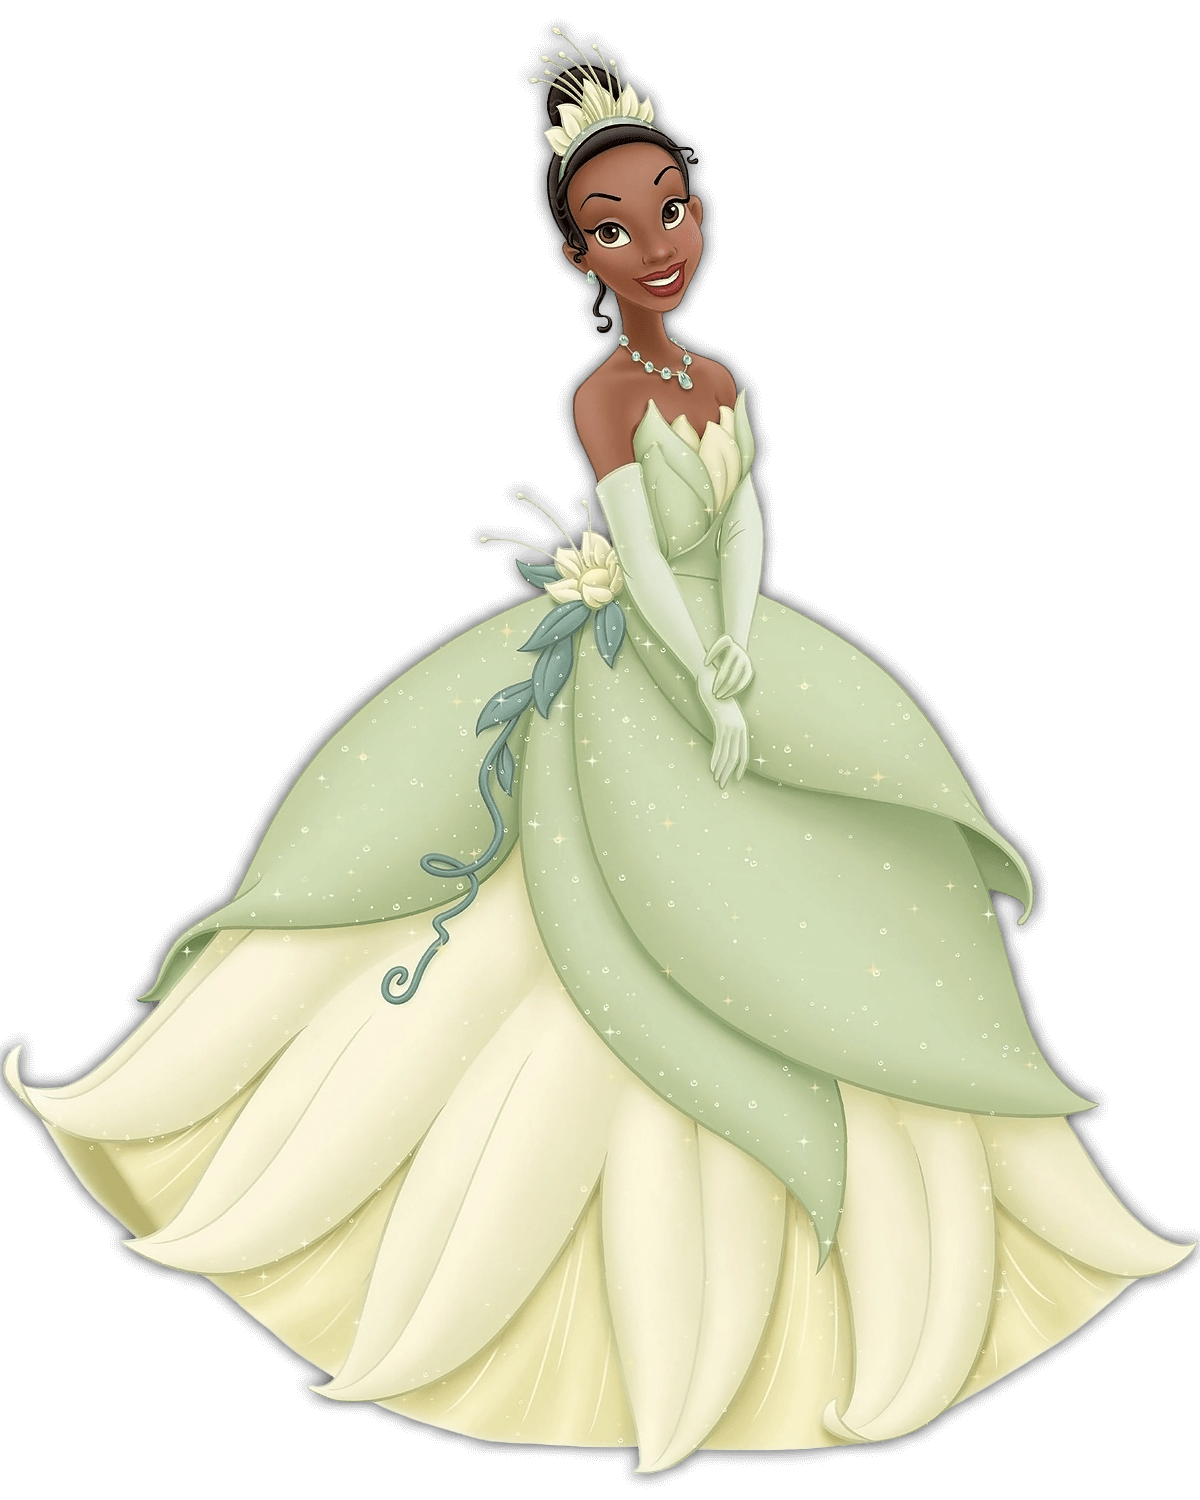 Disney Prinzessin Tiana. Die afroamerikanische Prinzessin hat ihr Haar hochgesteckt. sie trägt ein grünes Kleid, das an eine Seerose erinnert